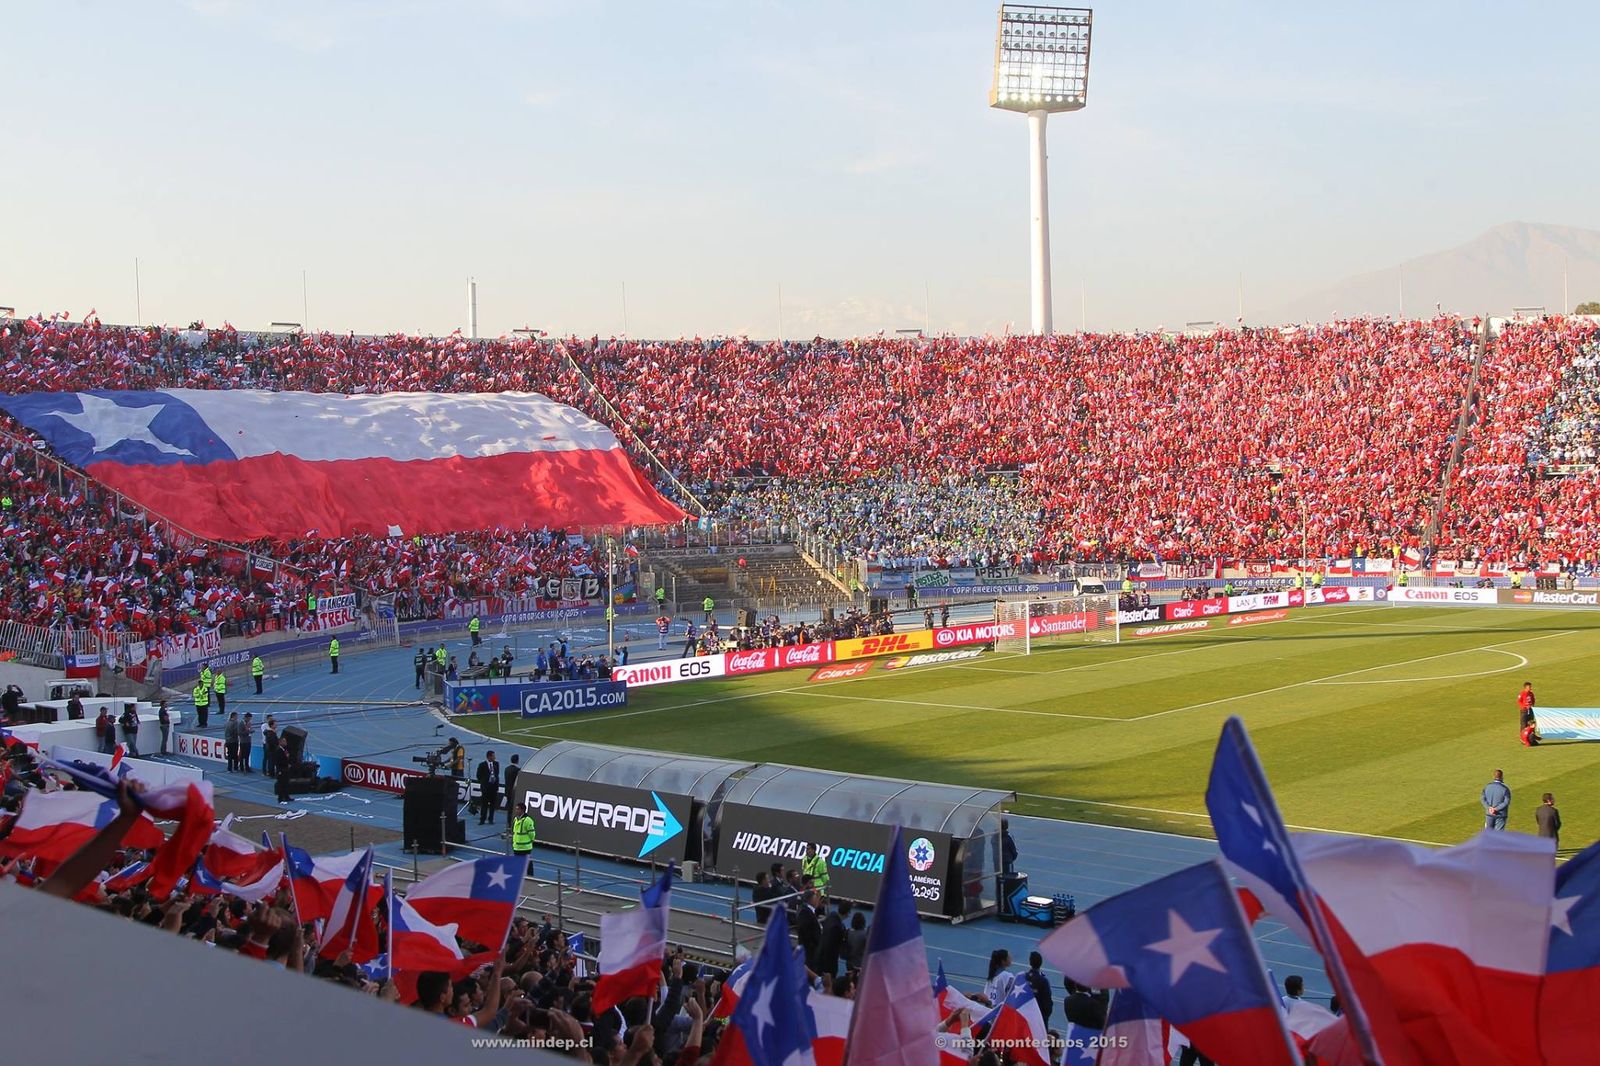 Copa América podría emigrar a Chile debido a crisis social en Colombia